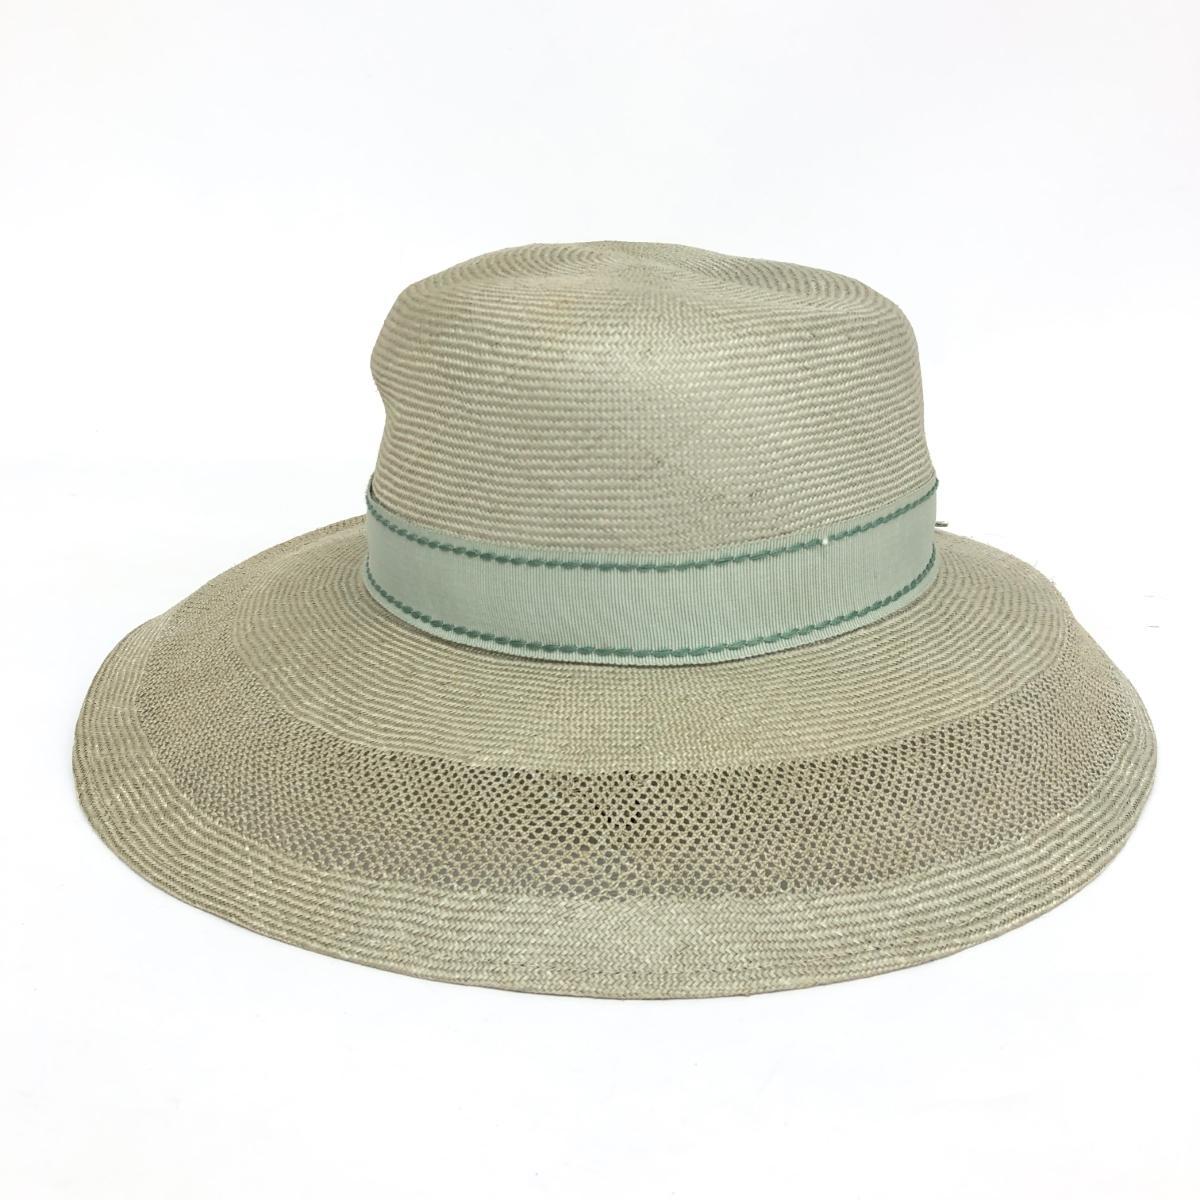 ◆papillon パピヨン 麦わら帽子 ◆ ライトグリーン 天然草 中央帽子 レディース 帽子 ハット hat 服飾小物_画像2